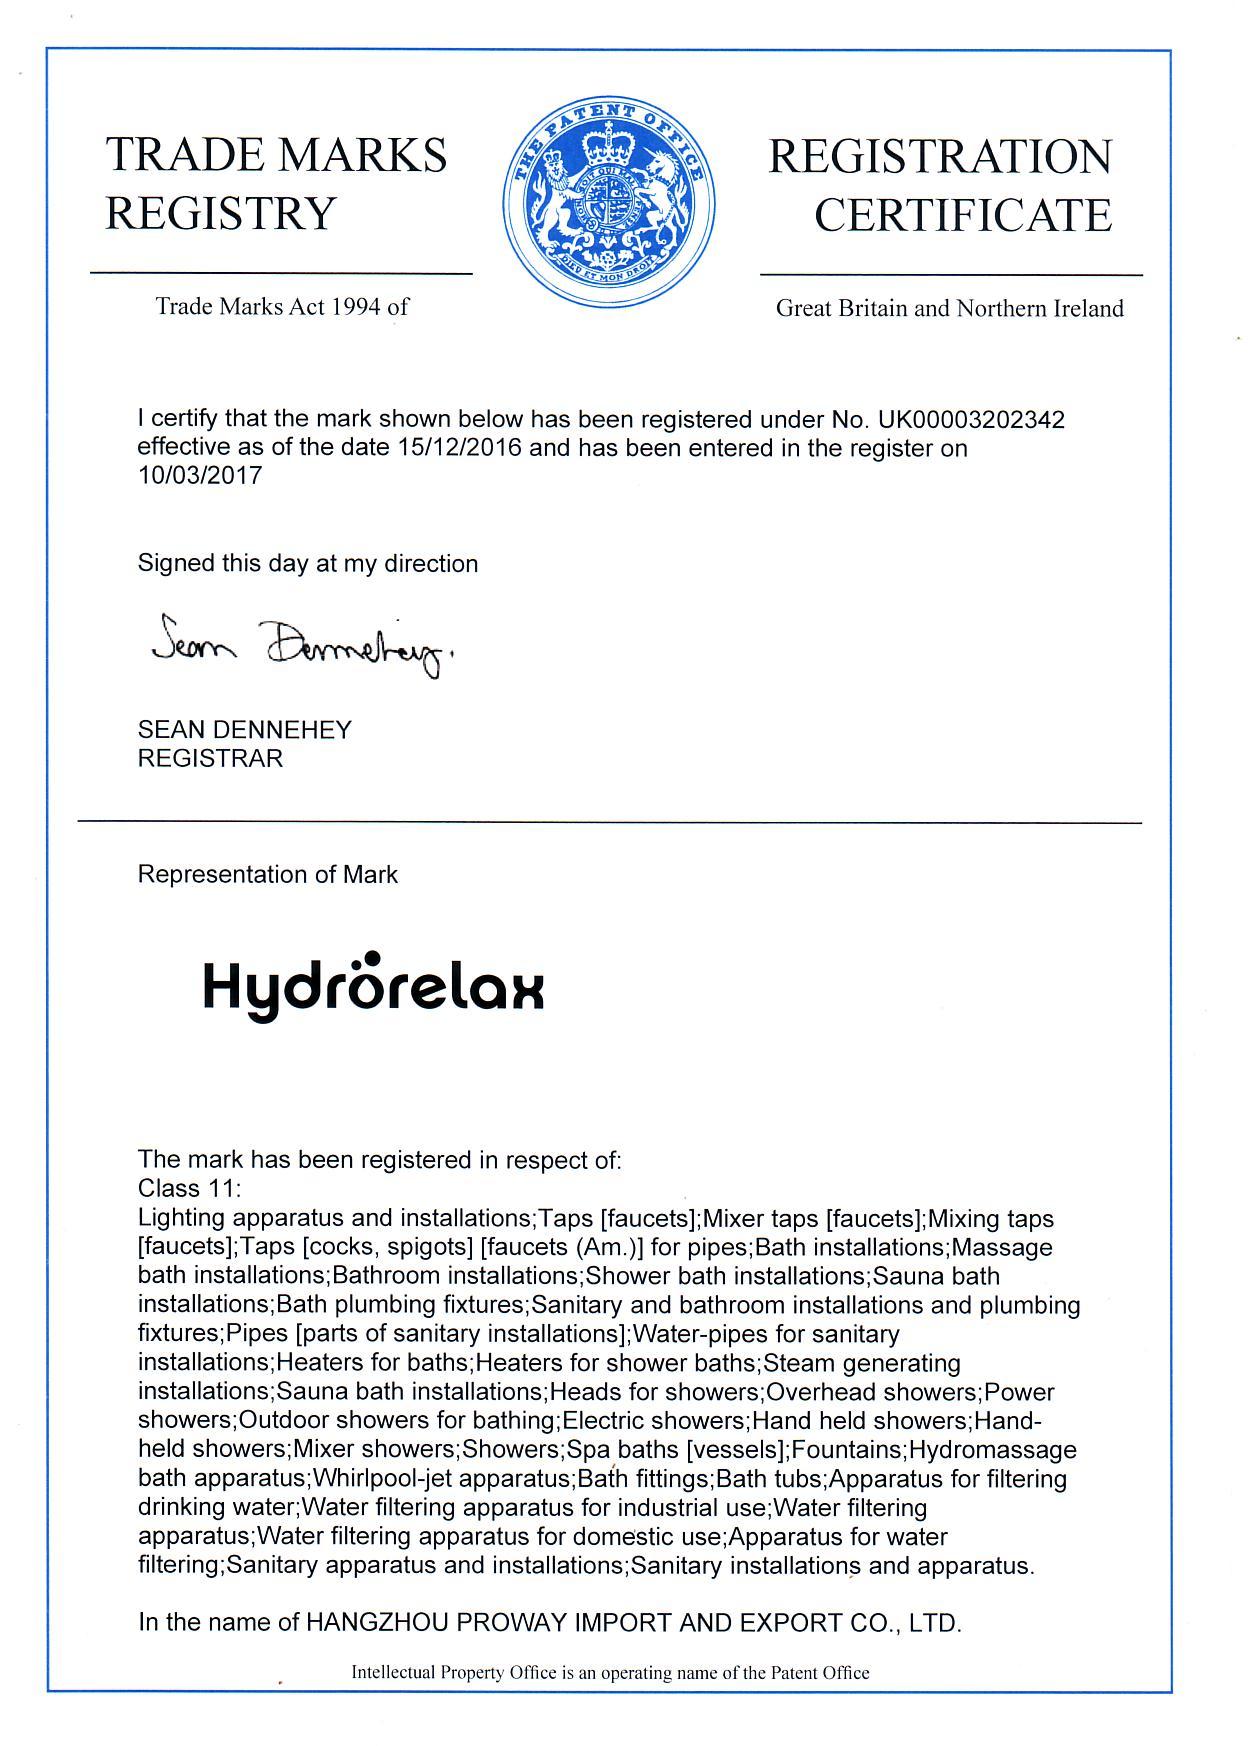 Hydrorelax British Trademark Certificate